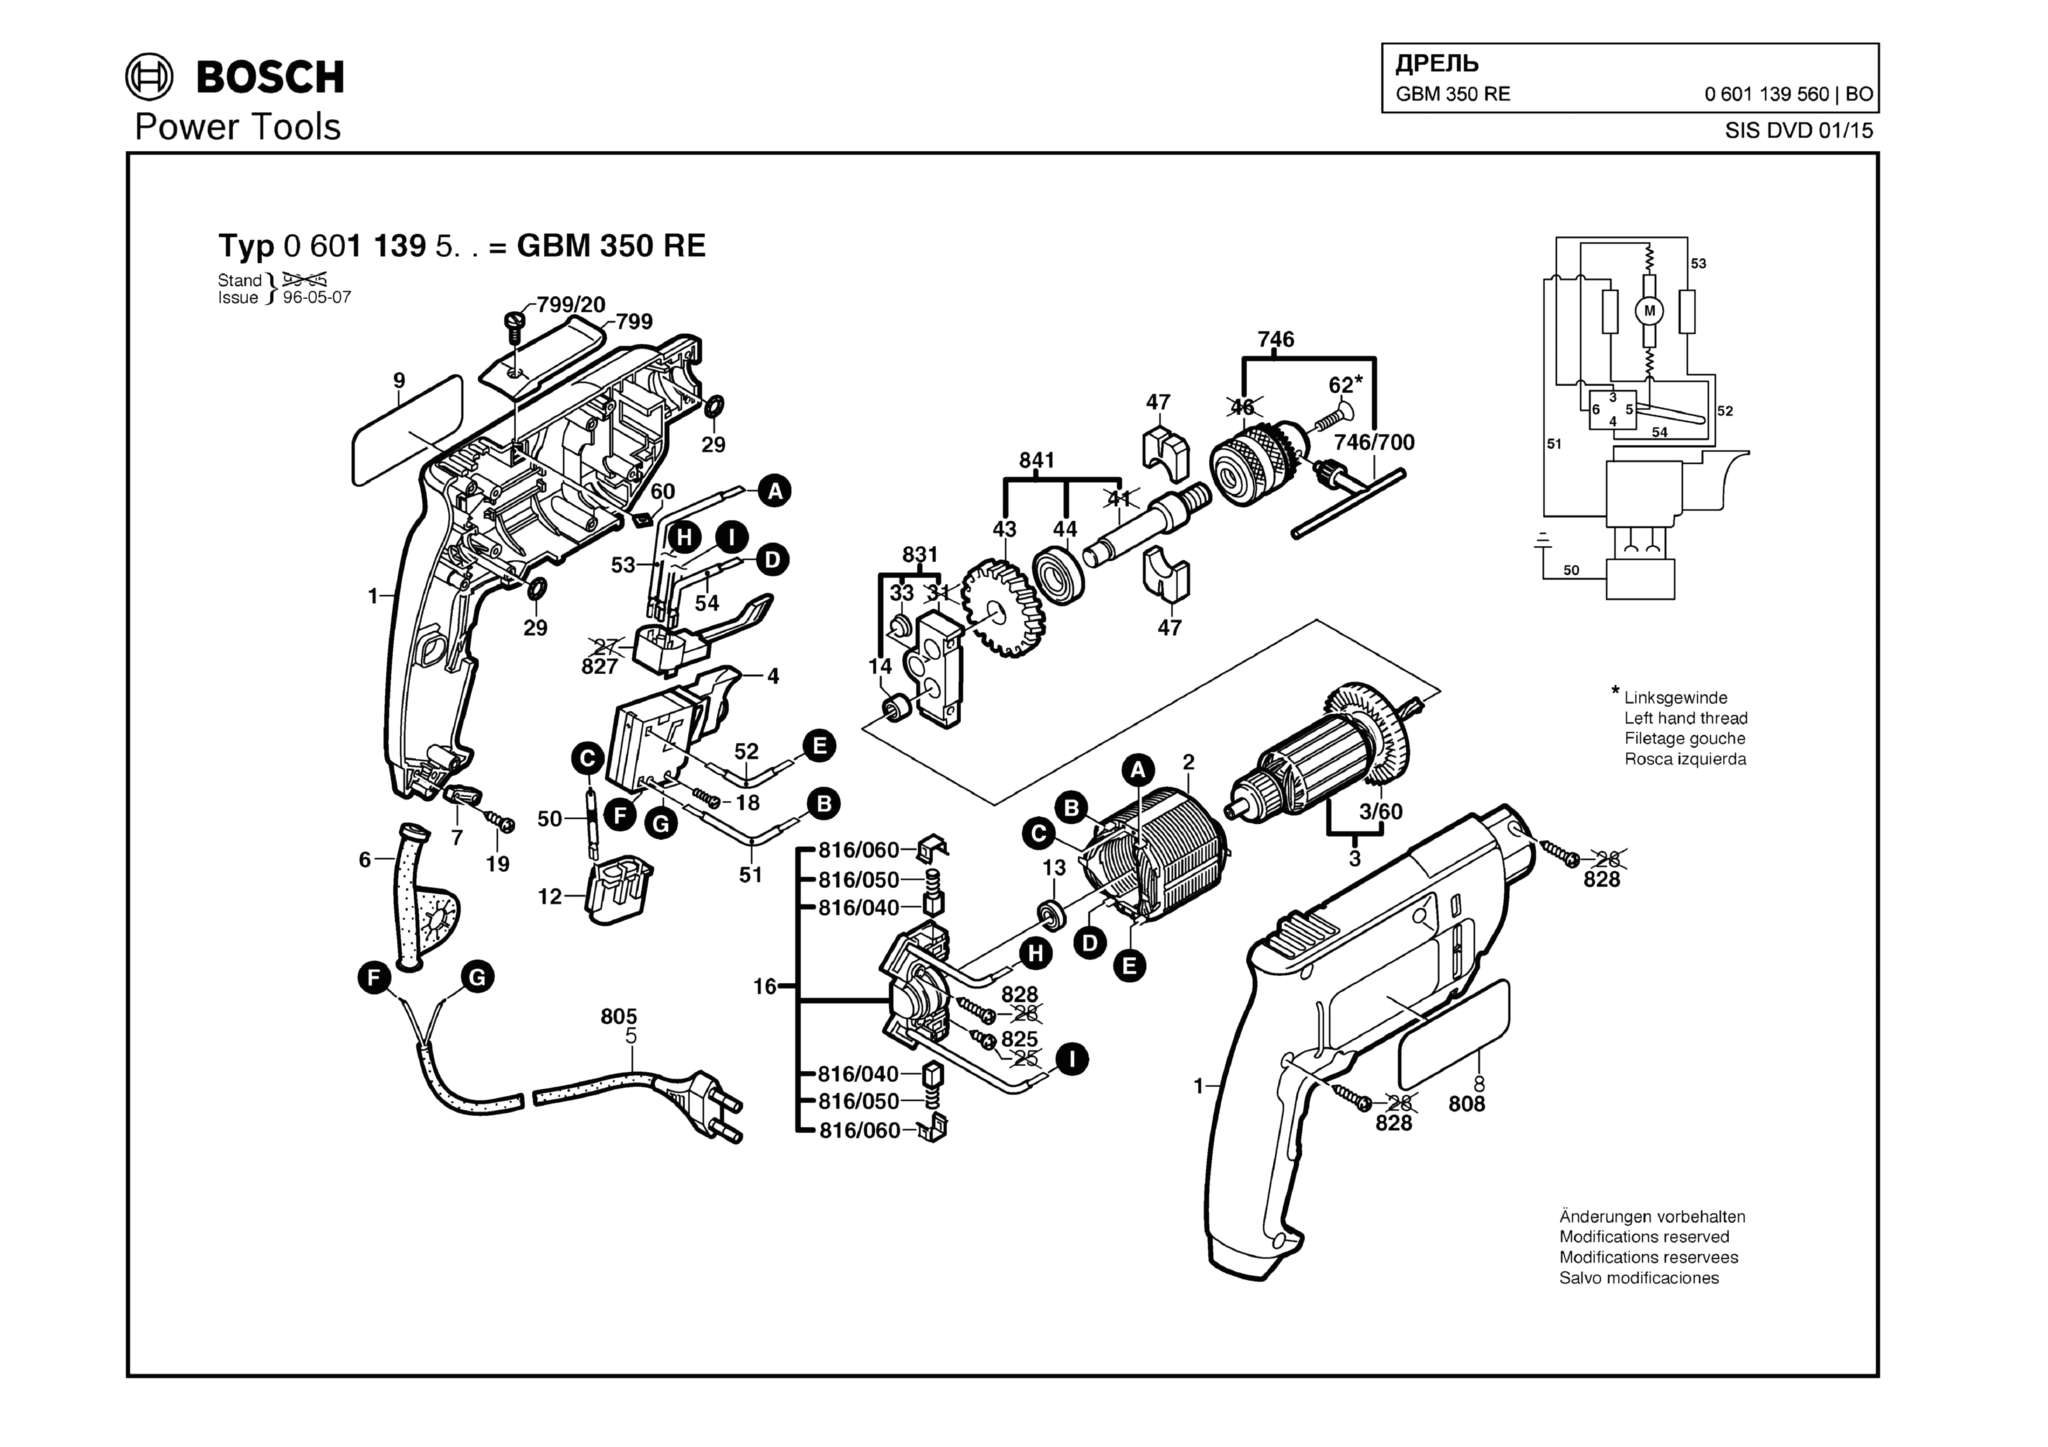 Запчасти, схема и деталировка Bosch GBM 350 RE (ТИП 0601139560)